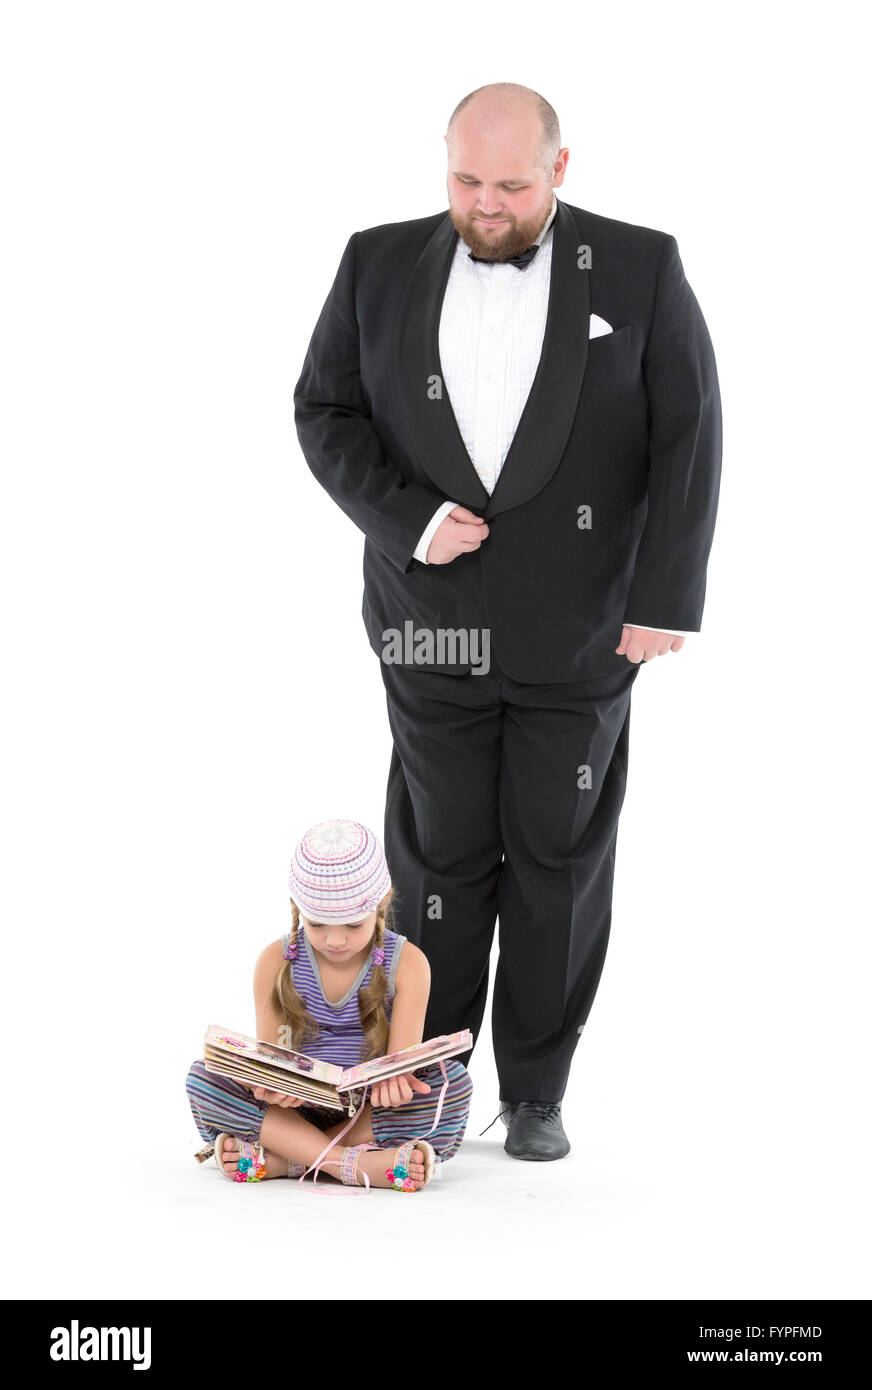 Little Girl and Servant in Tuxedo Stock Photo